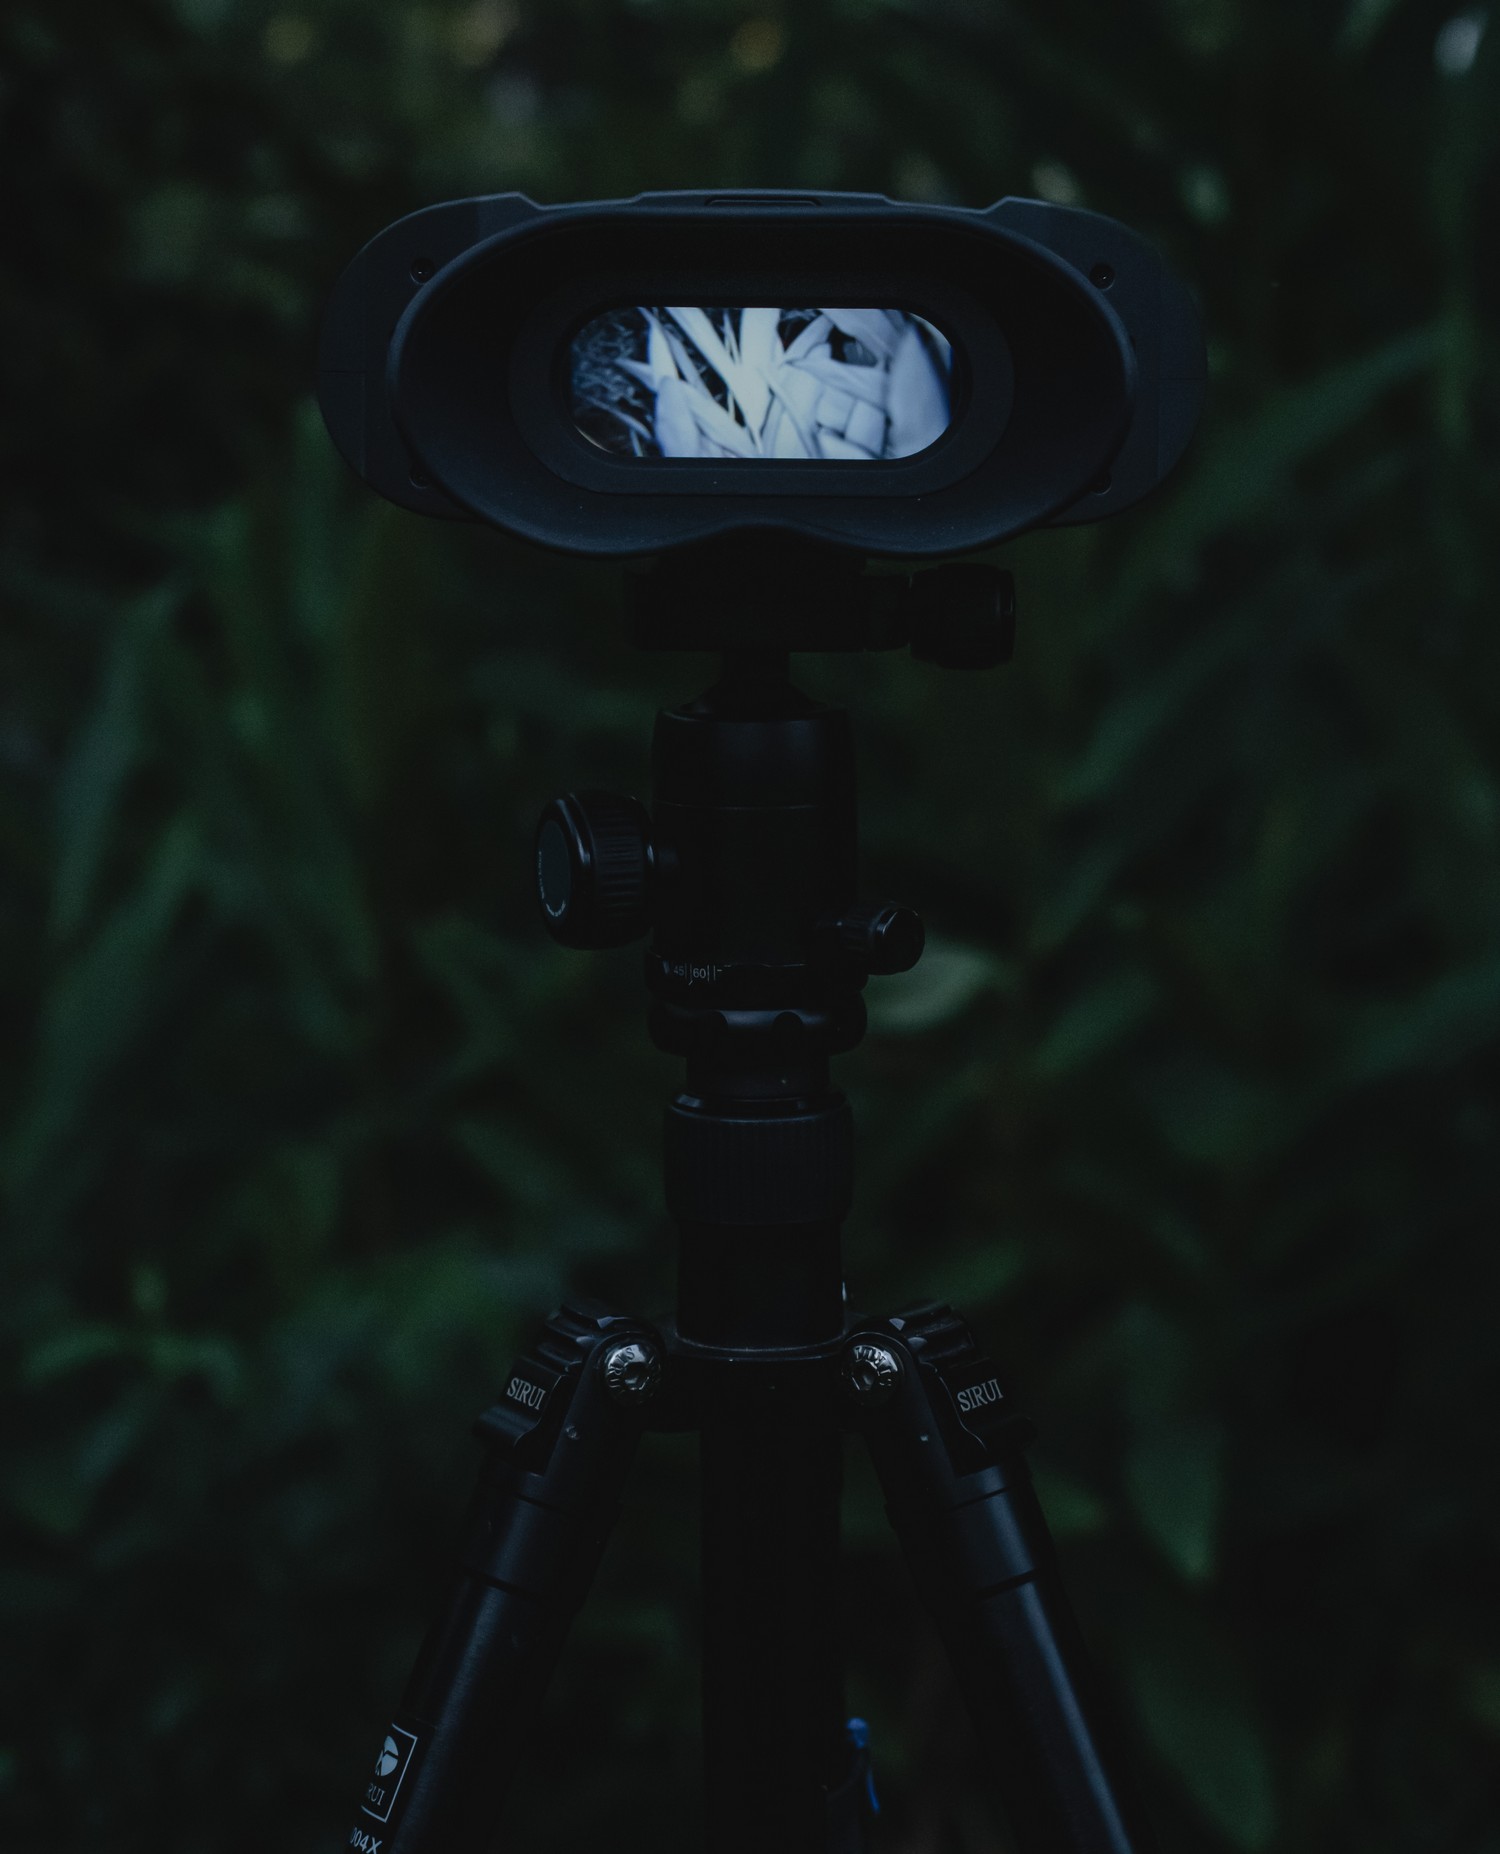 Nachtsichtgerät NVB 200 - Automatisches Umschalten zwischen Tag und Nacht im Dual-Modus